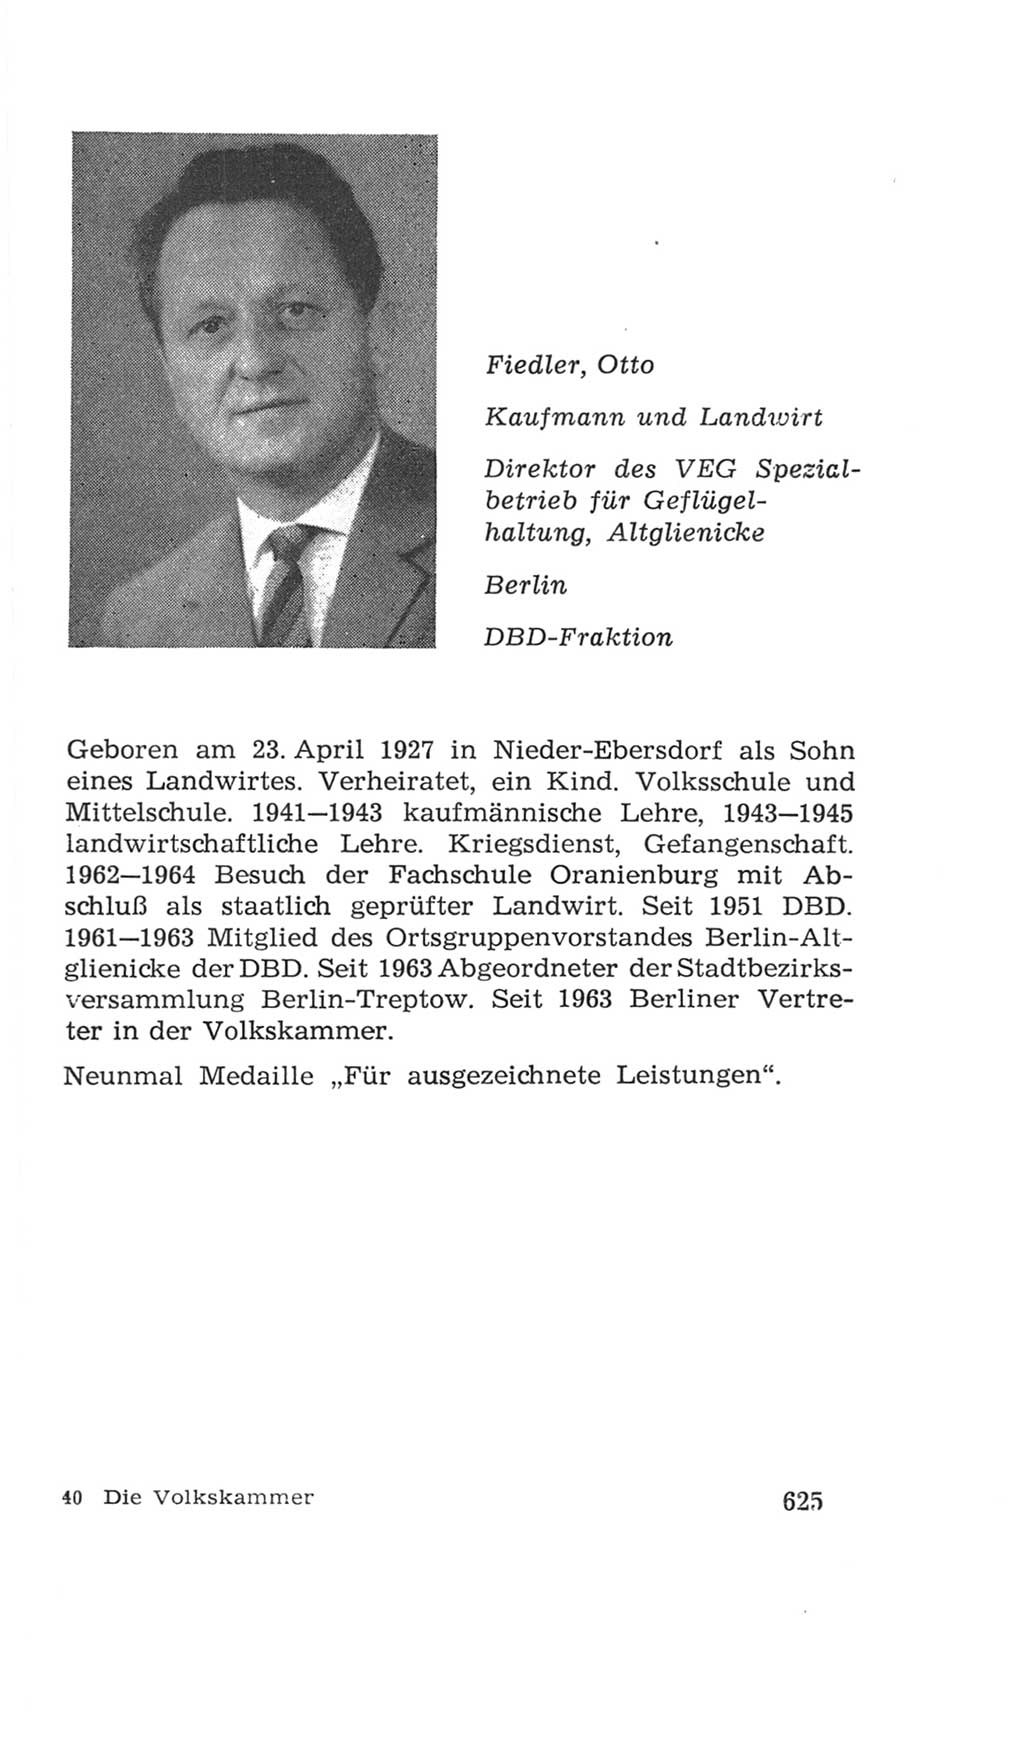 Volkskammer (VK) der Deutschen Demokratischen Republik (DDR), 4. Wahlperiode 1963-1967, Seite 625 (VK. DDR 4. WP. 1963-1967, S. 625)